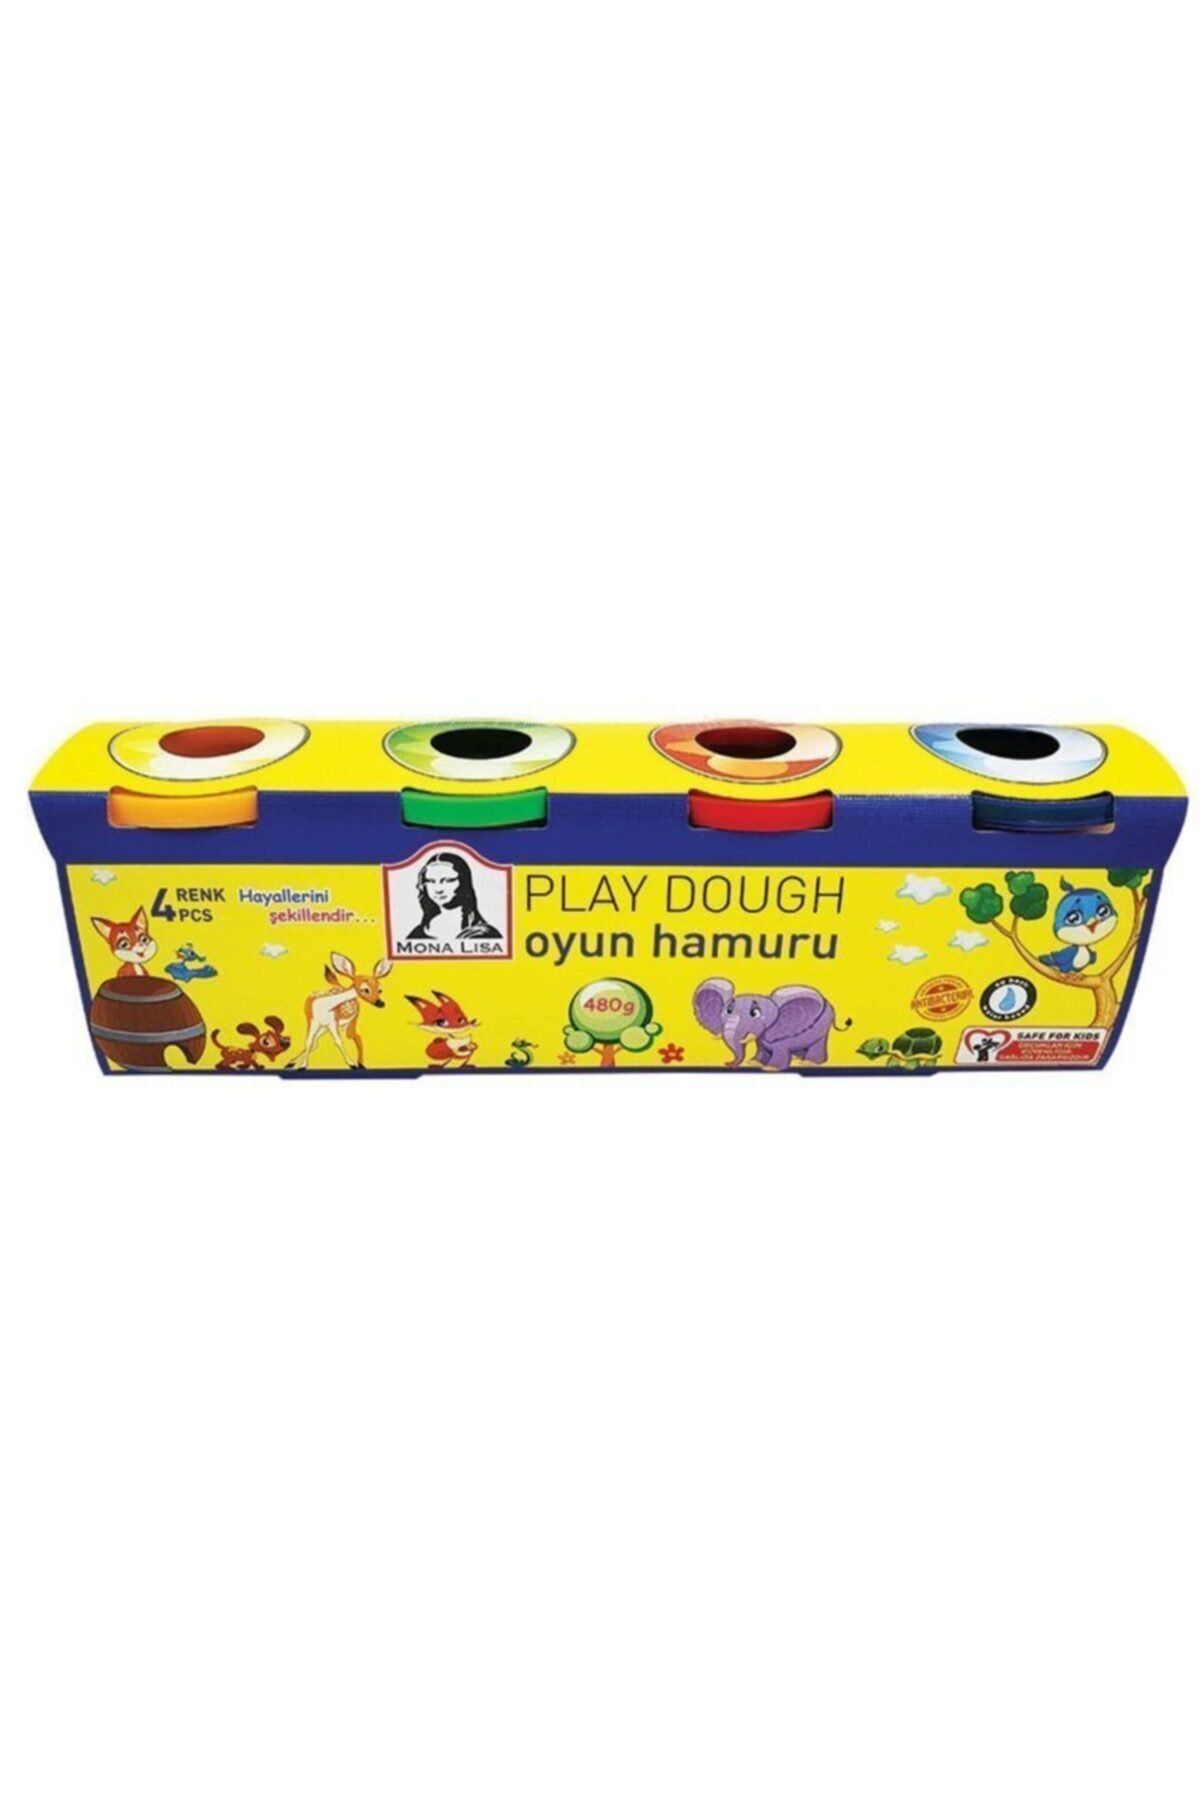 Monalisa Play Dough Oyun Hamuru 4 Lü 480 G